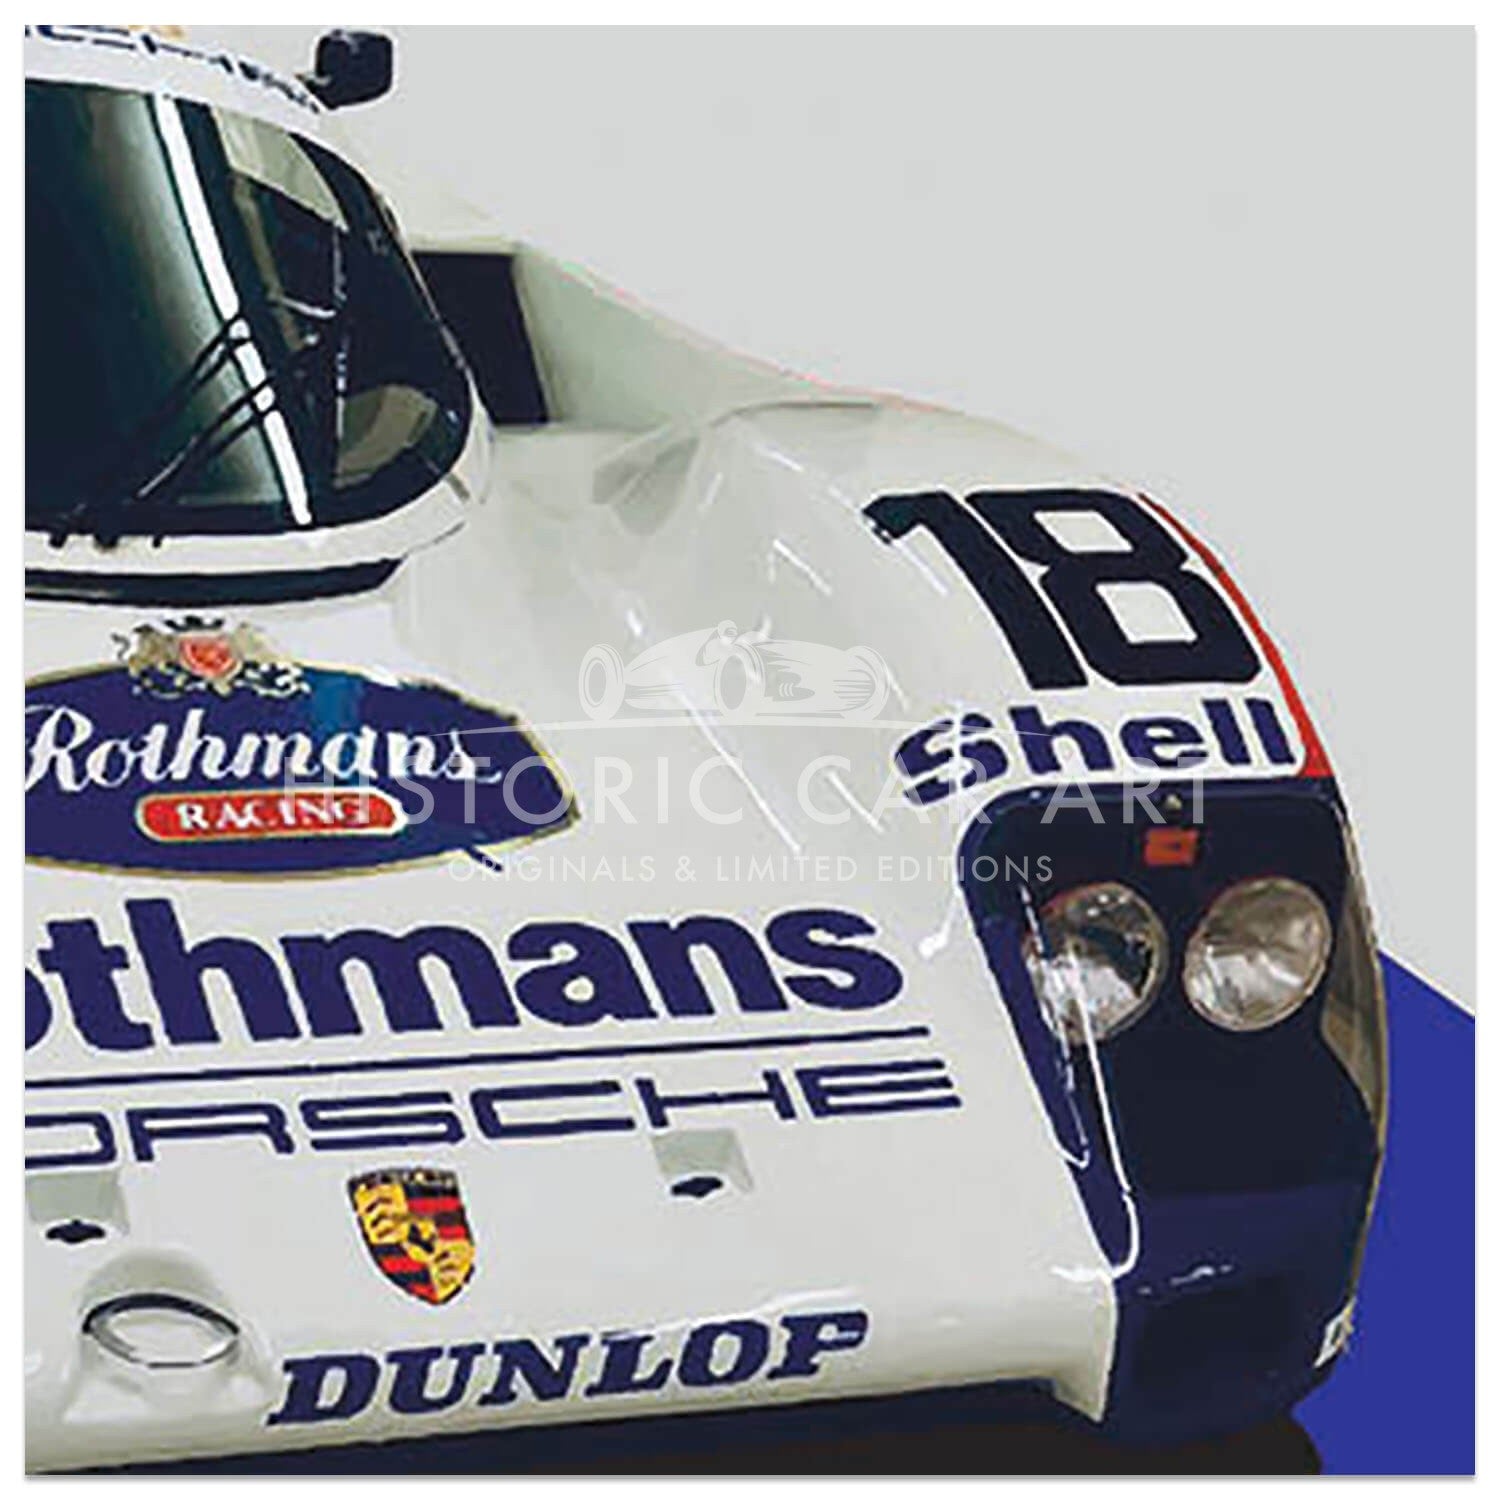 Rothmans | Porsche 962 | Group C | Art Print | Poster